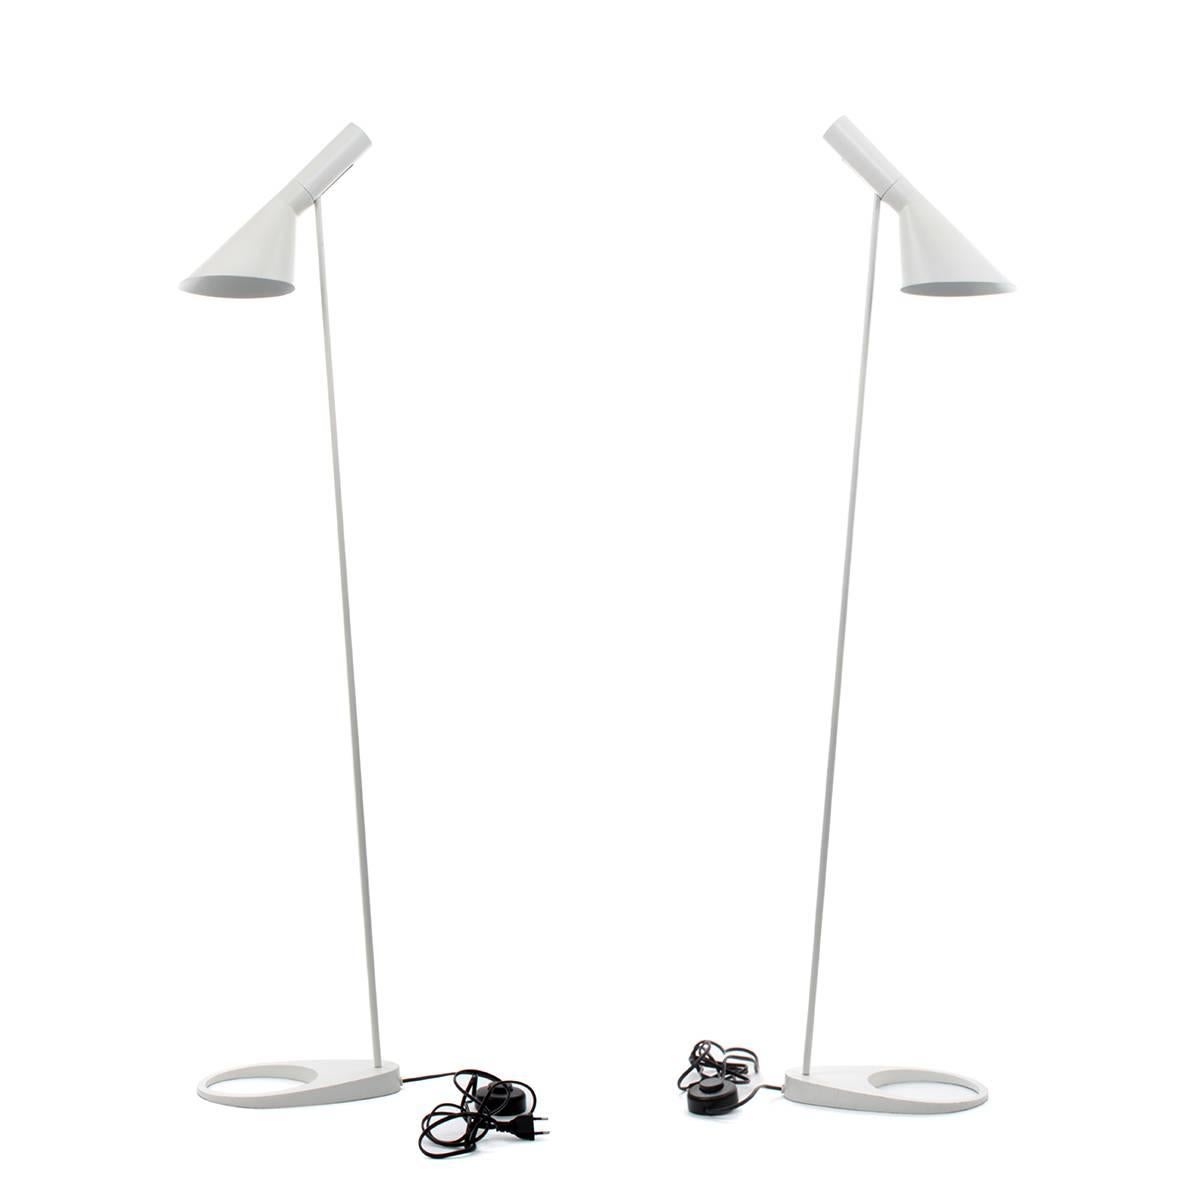 Mid-Century Modern AJ Floor Lamp, Arne Jacobsen, Louis Poulsen, 1957. the Classic White Floor Light For Sale